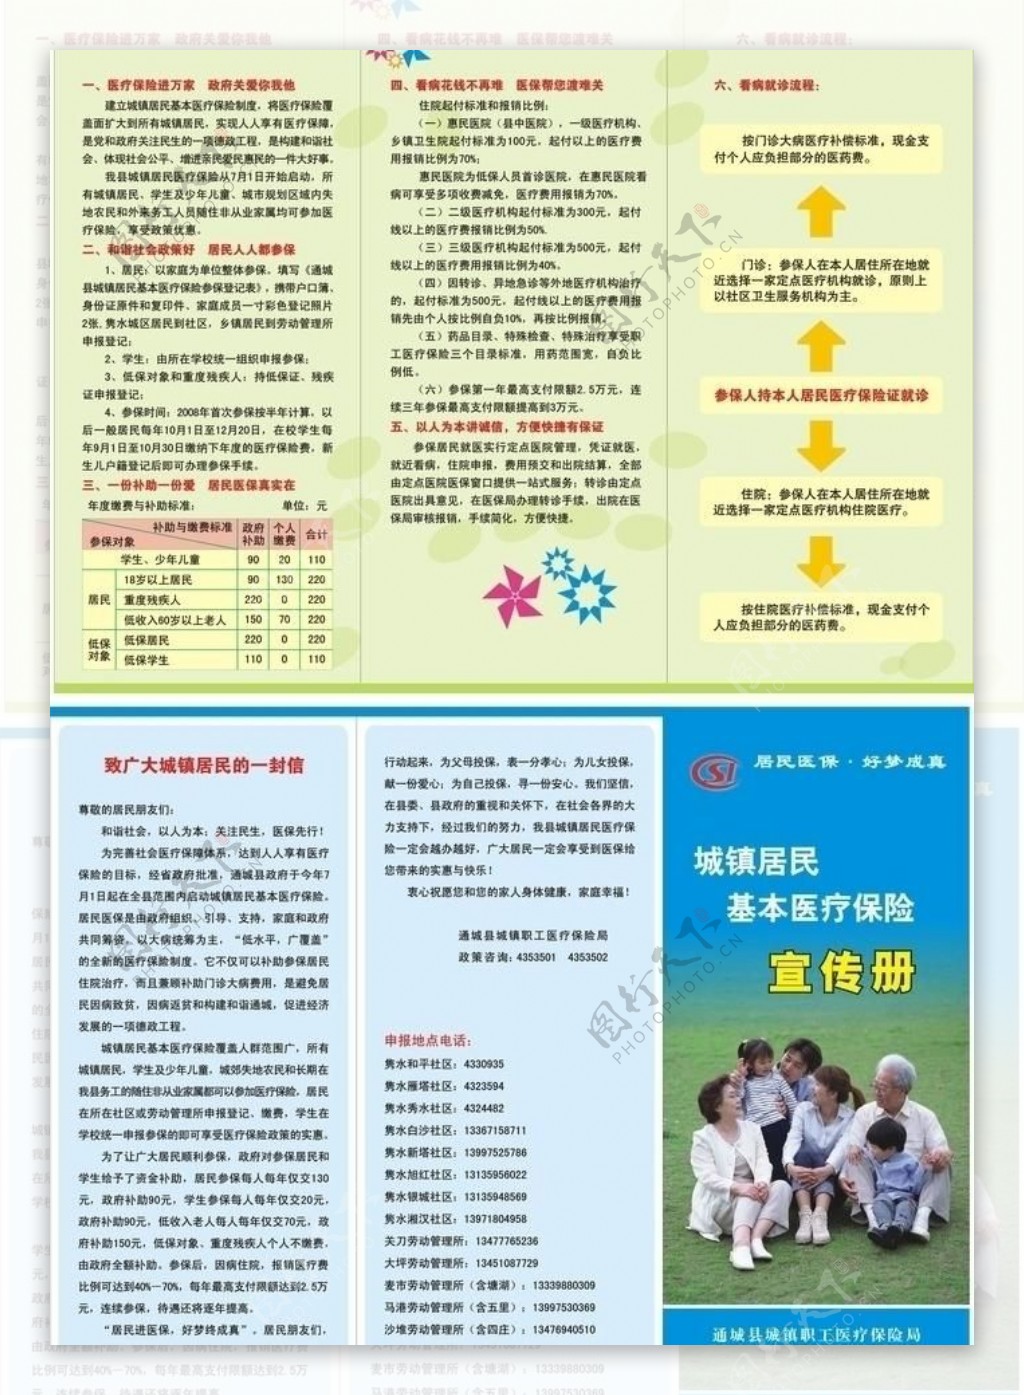 城镇居民医疗保险手册图片